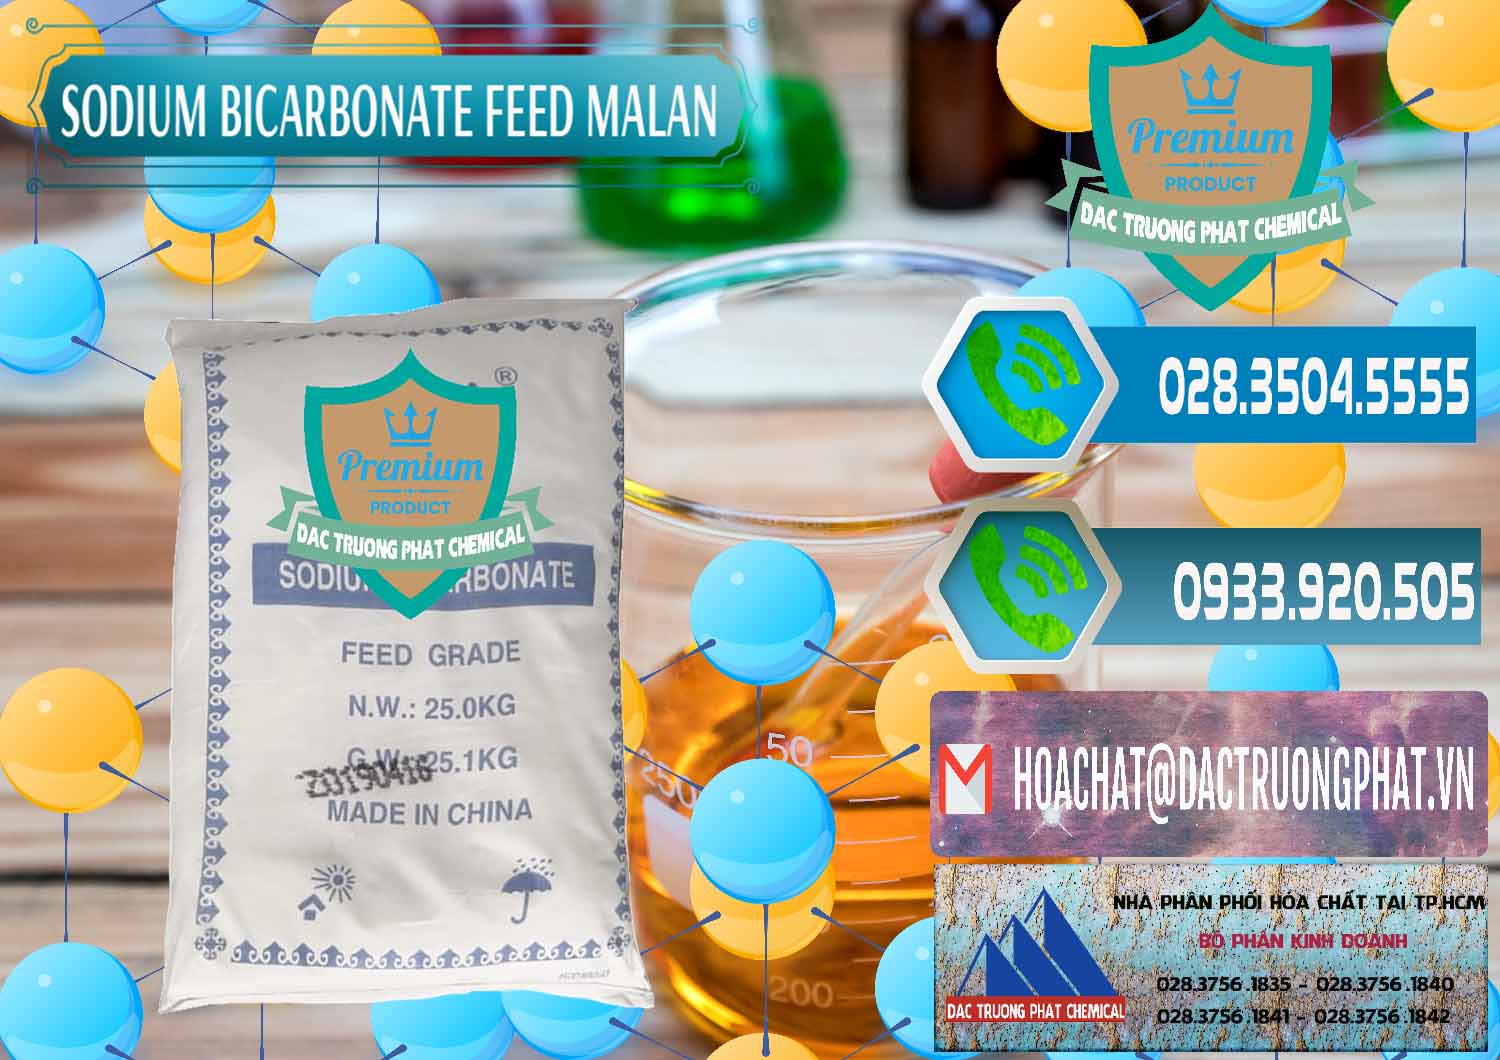 Nơi chuyên bán & phân phối Sodium Bicarbonate – Bicar NaHCO3 Feed Grade Malan Trung Quốc China - 0262 - Đơn vị chuyên cung cấp - kinh doanh hóa chất tại TP.HCM - congtyhoachat.net